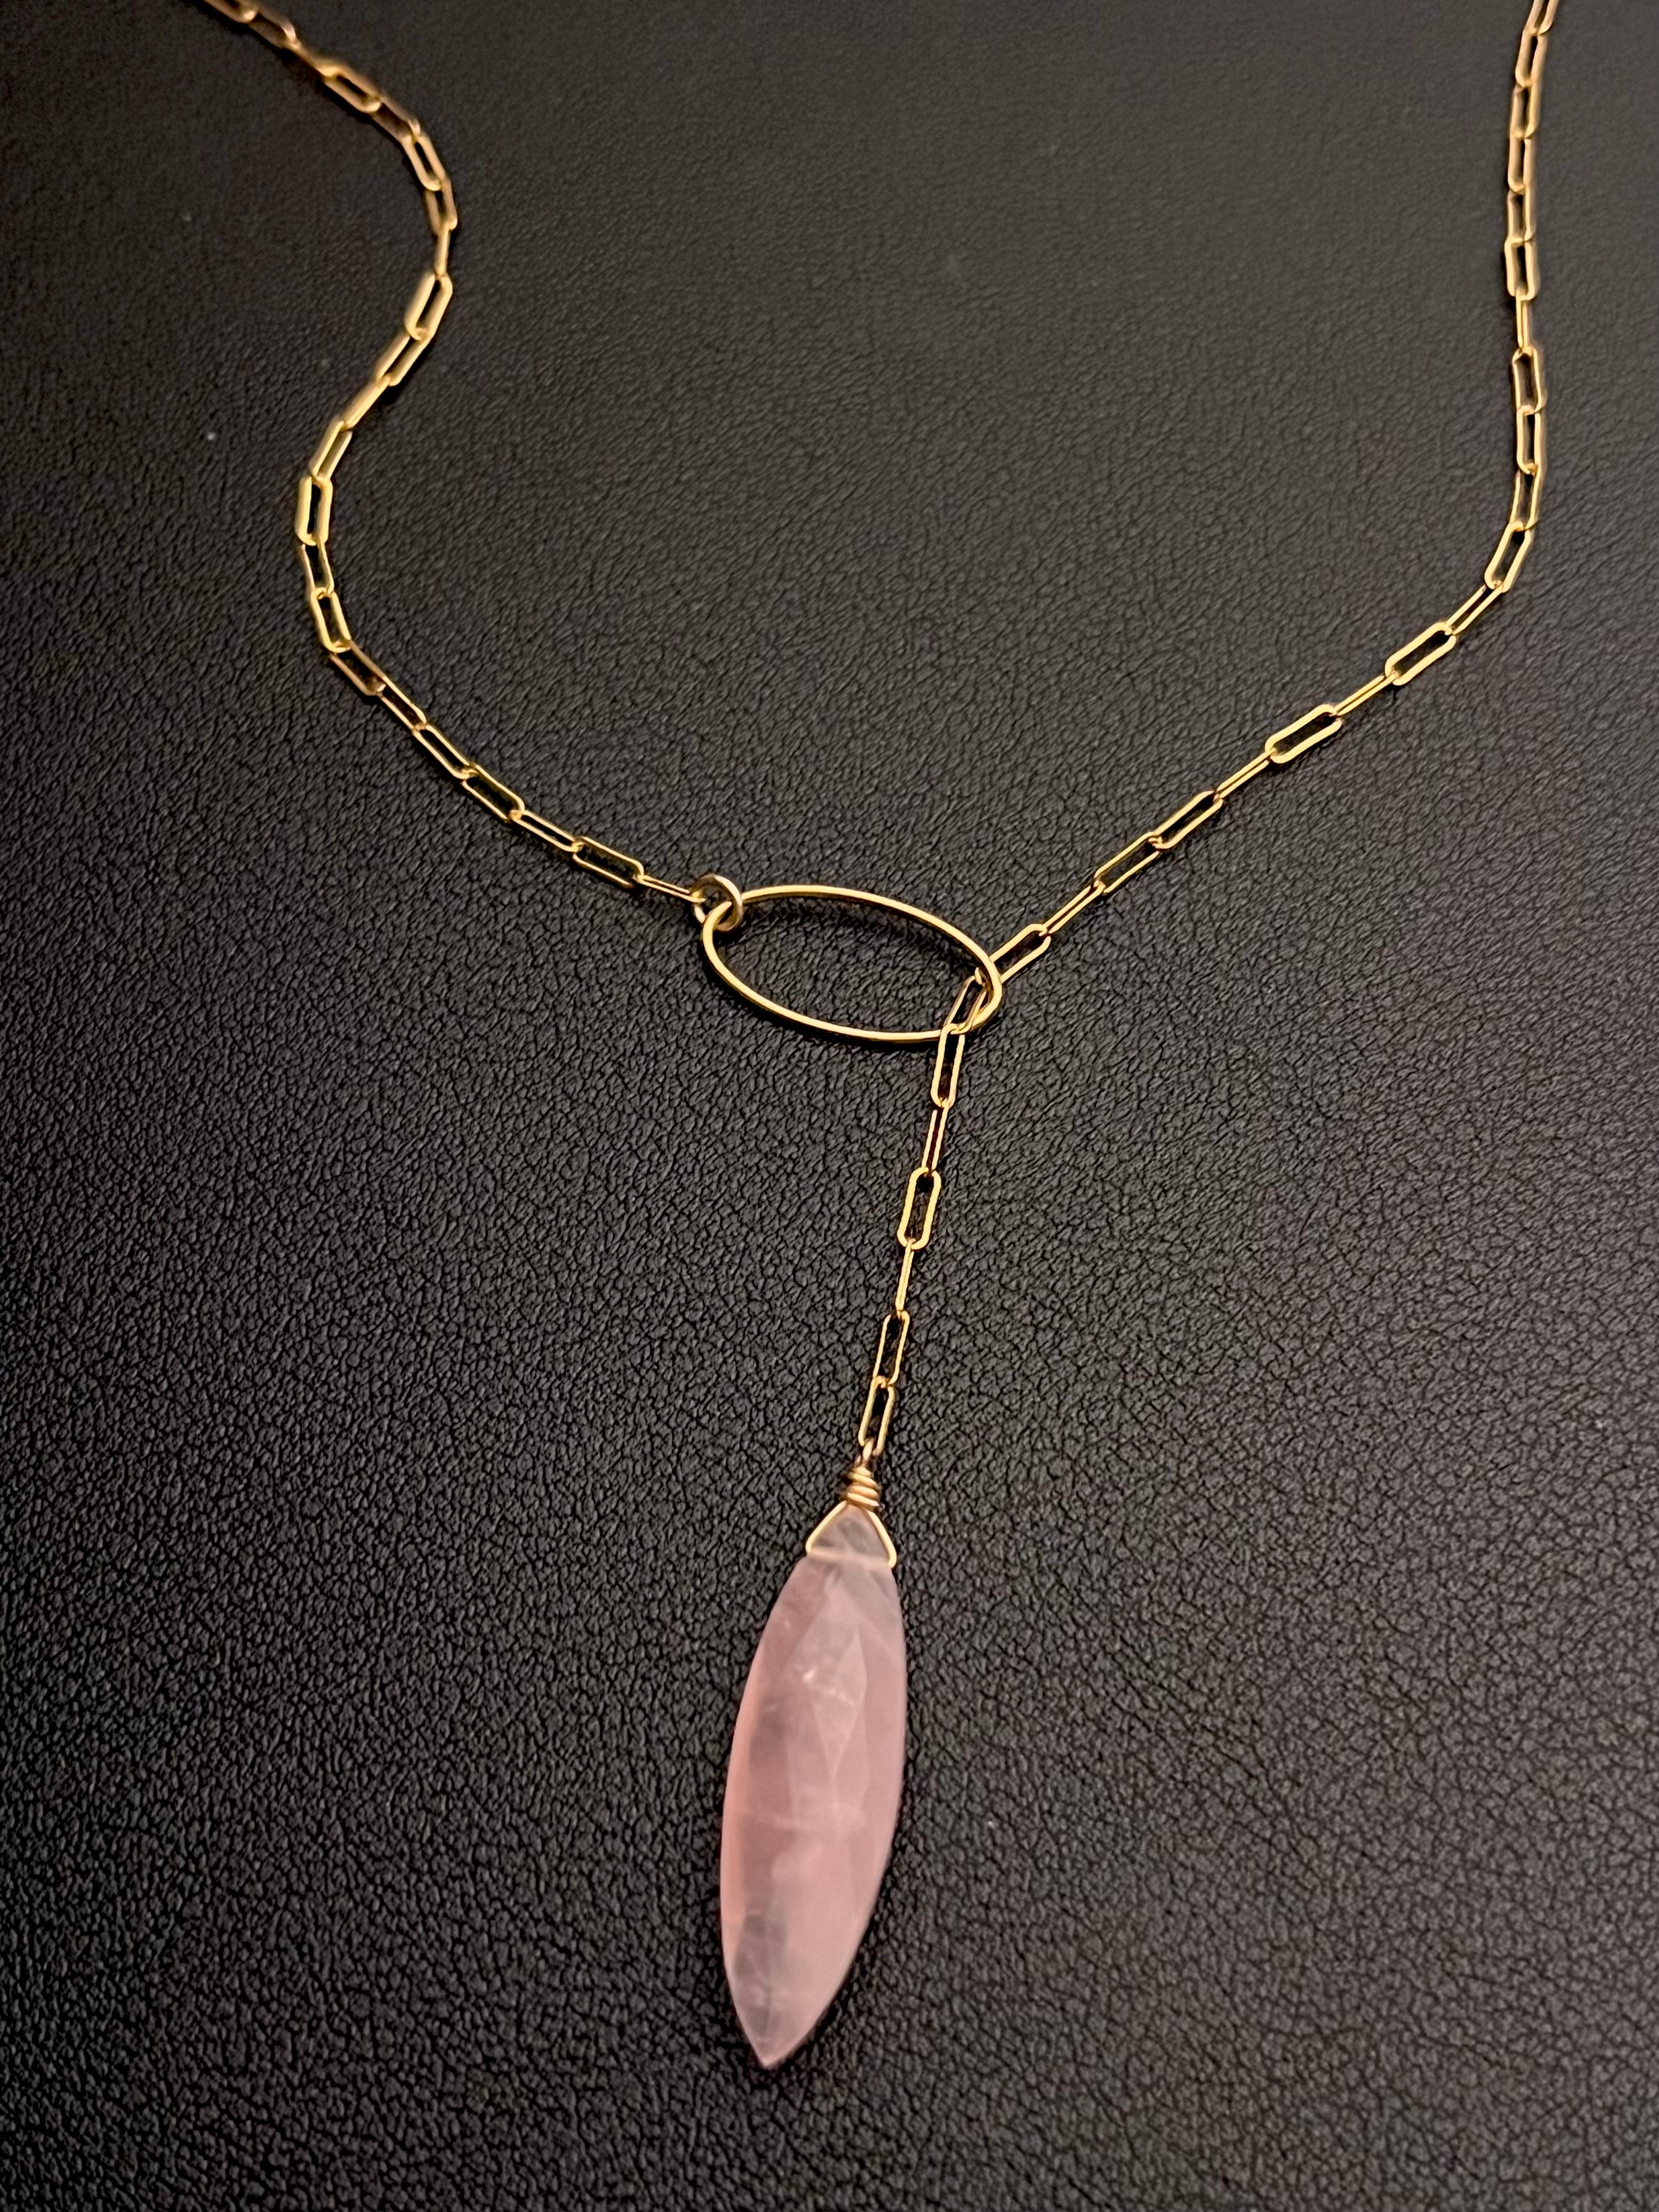 •LINKED LARIAT• rose quartz + gold necklace (20")